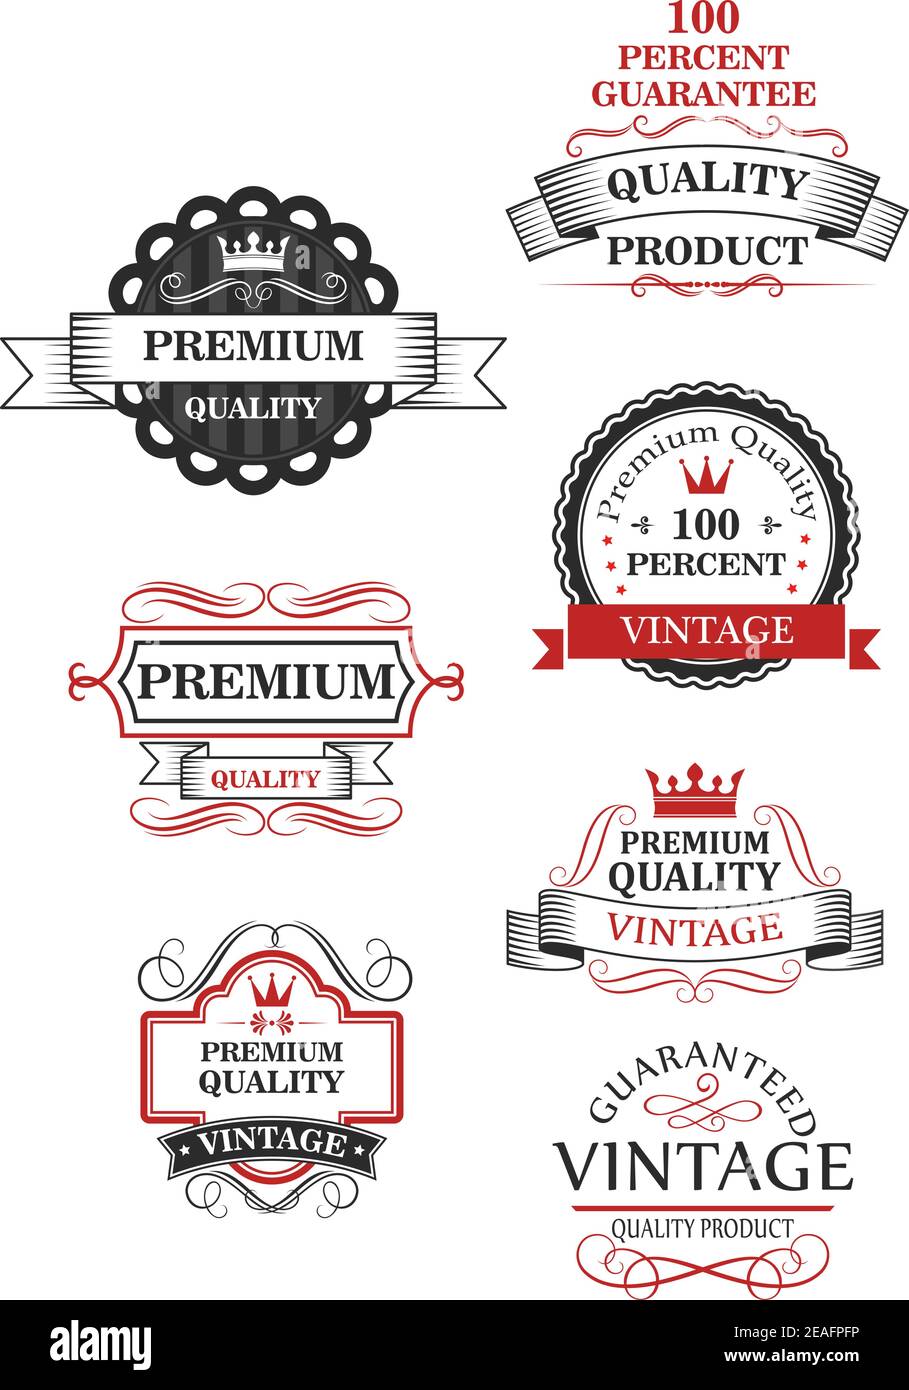 Premium-Qualität Label-Kollektion von sieben verschiedenen Designs garantiert die Beste oder 100 Prozent Vintage Qualität Stock Vektor